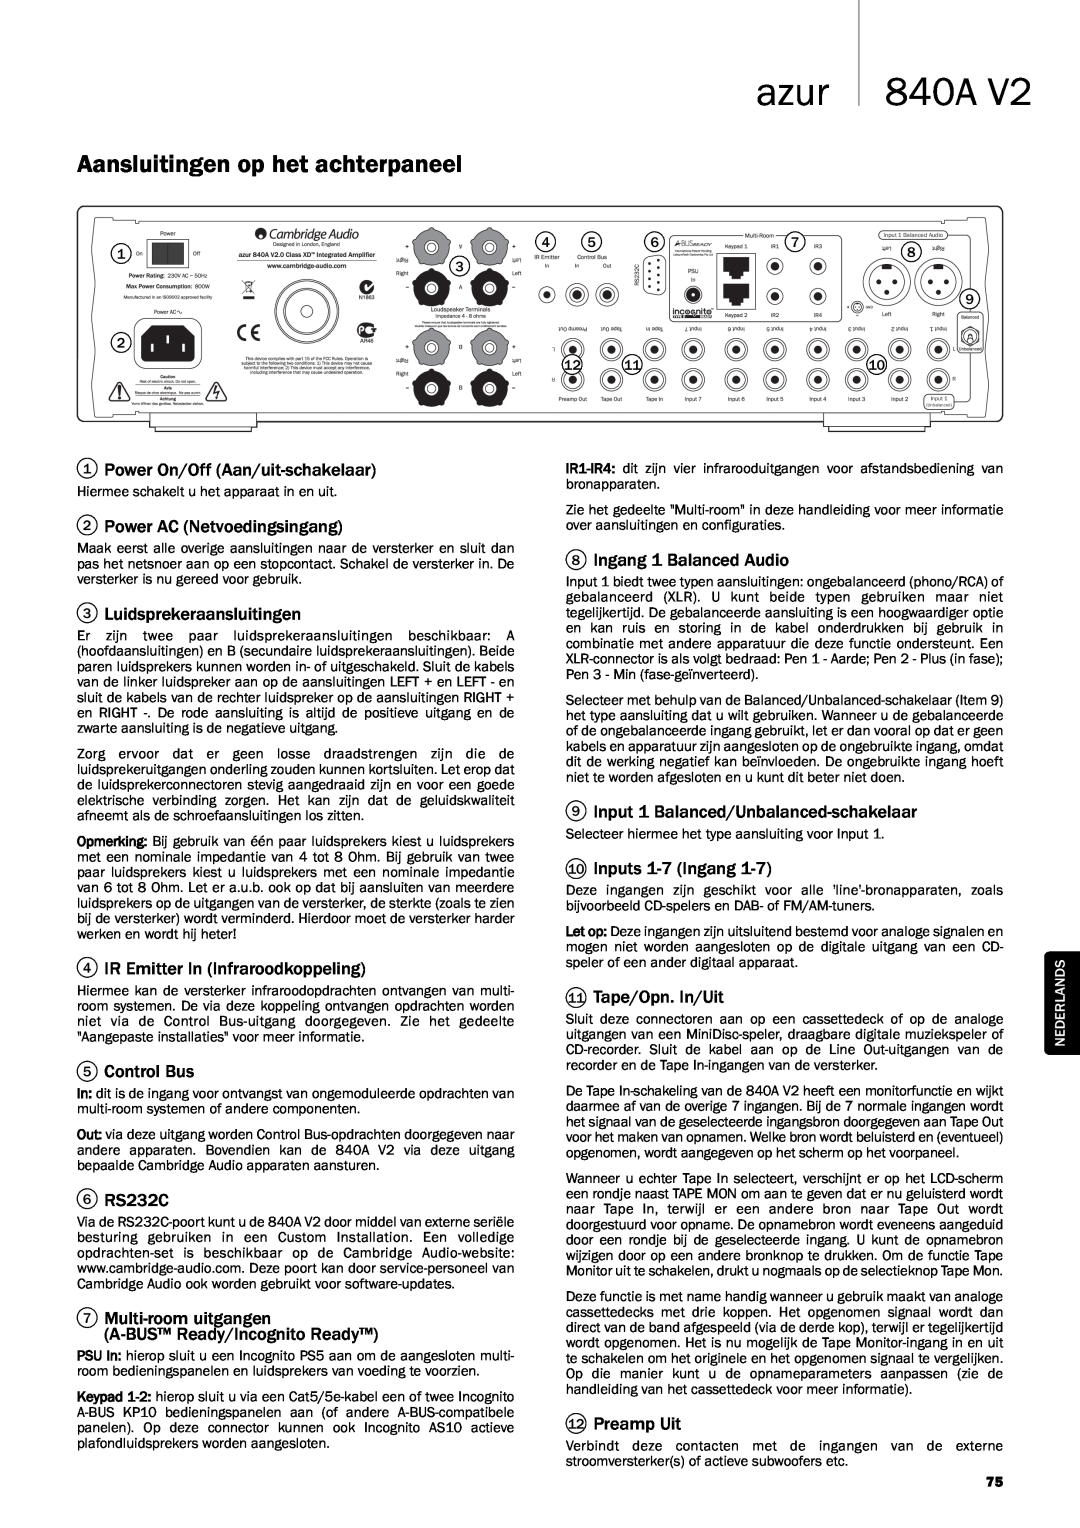 Cambridge Audio 840A V2 manual Aansluitingen op het achterpaneel, azur 840A 